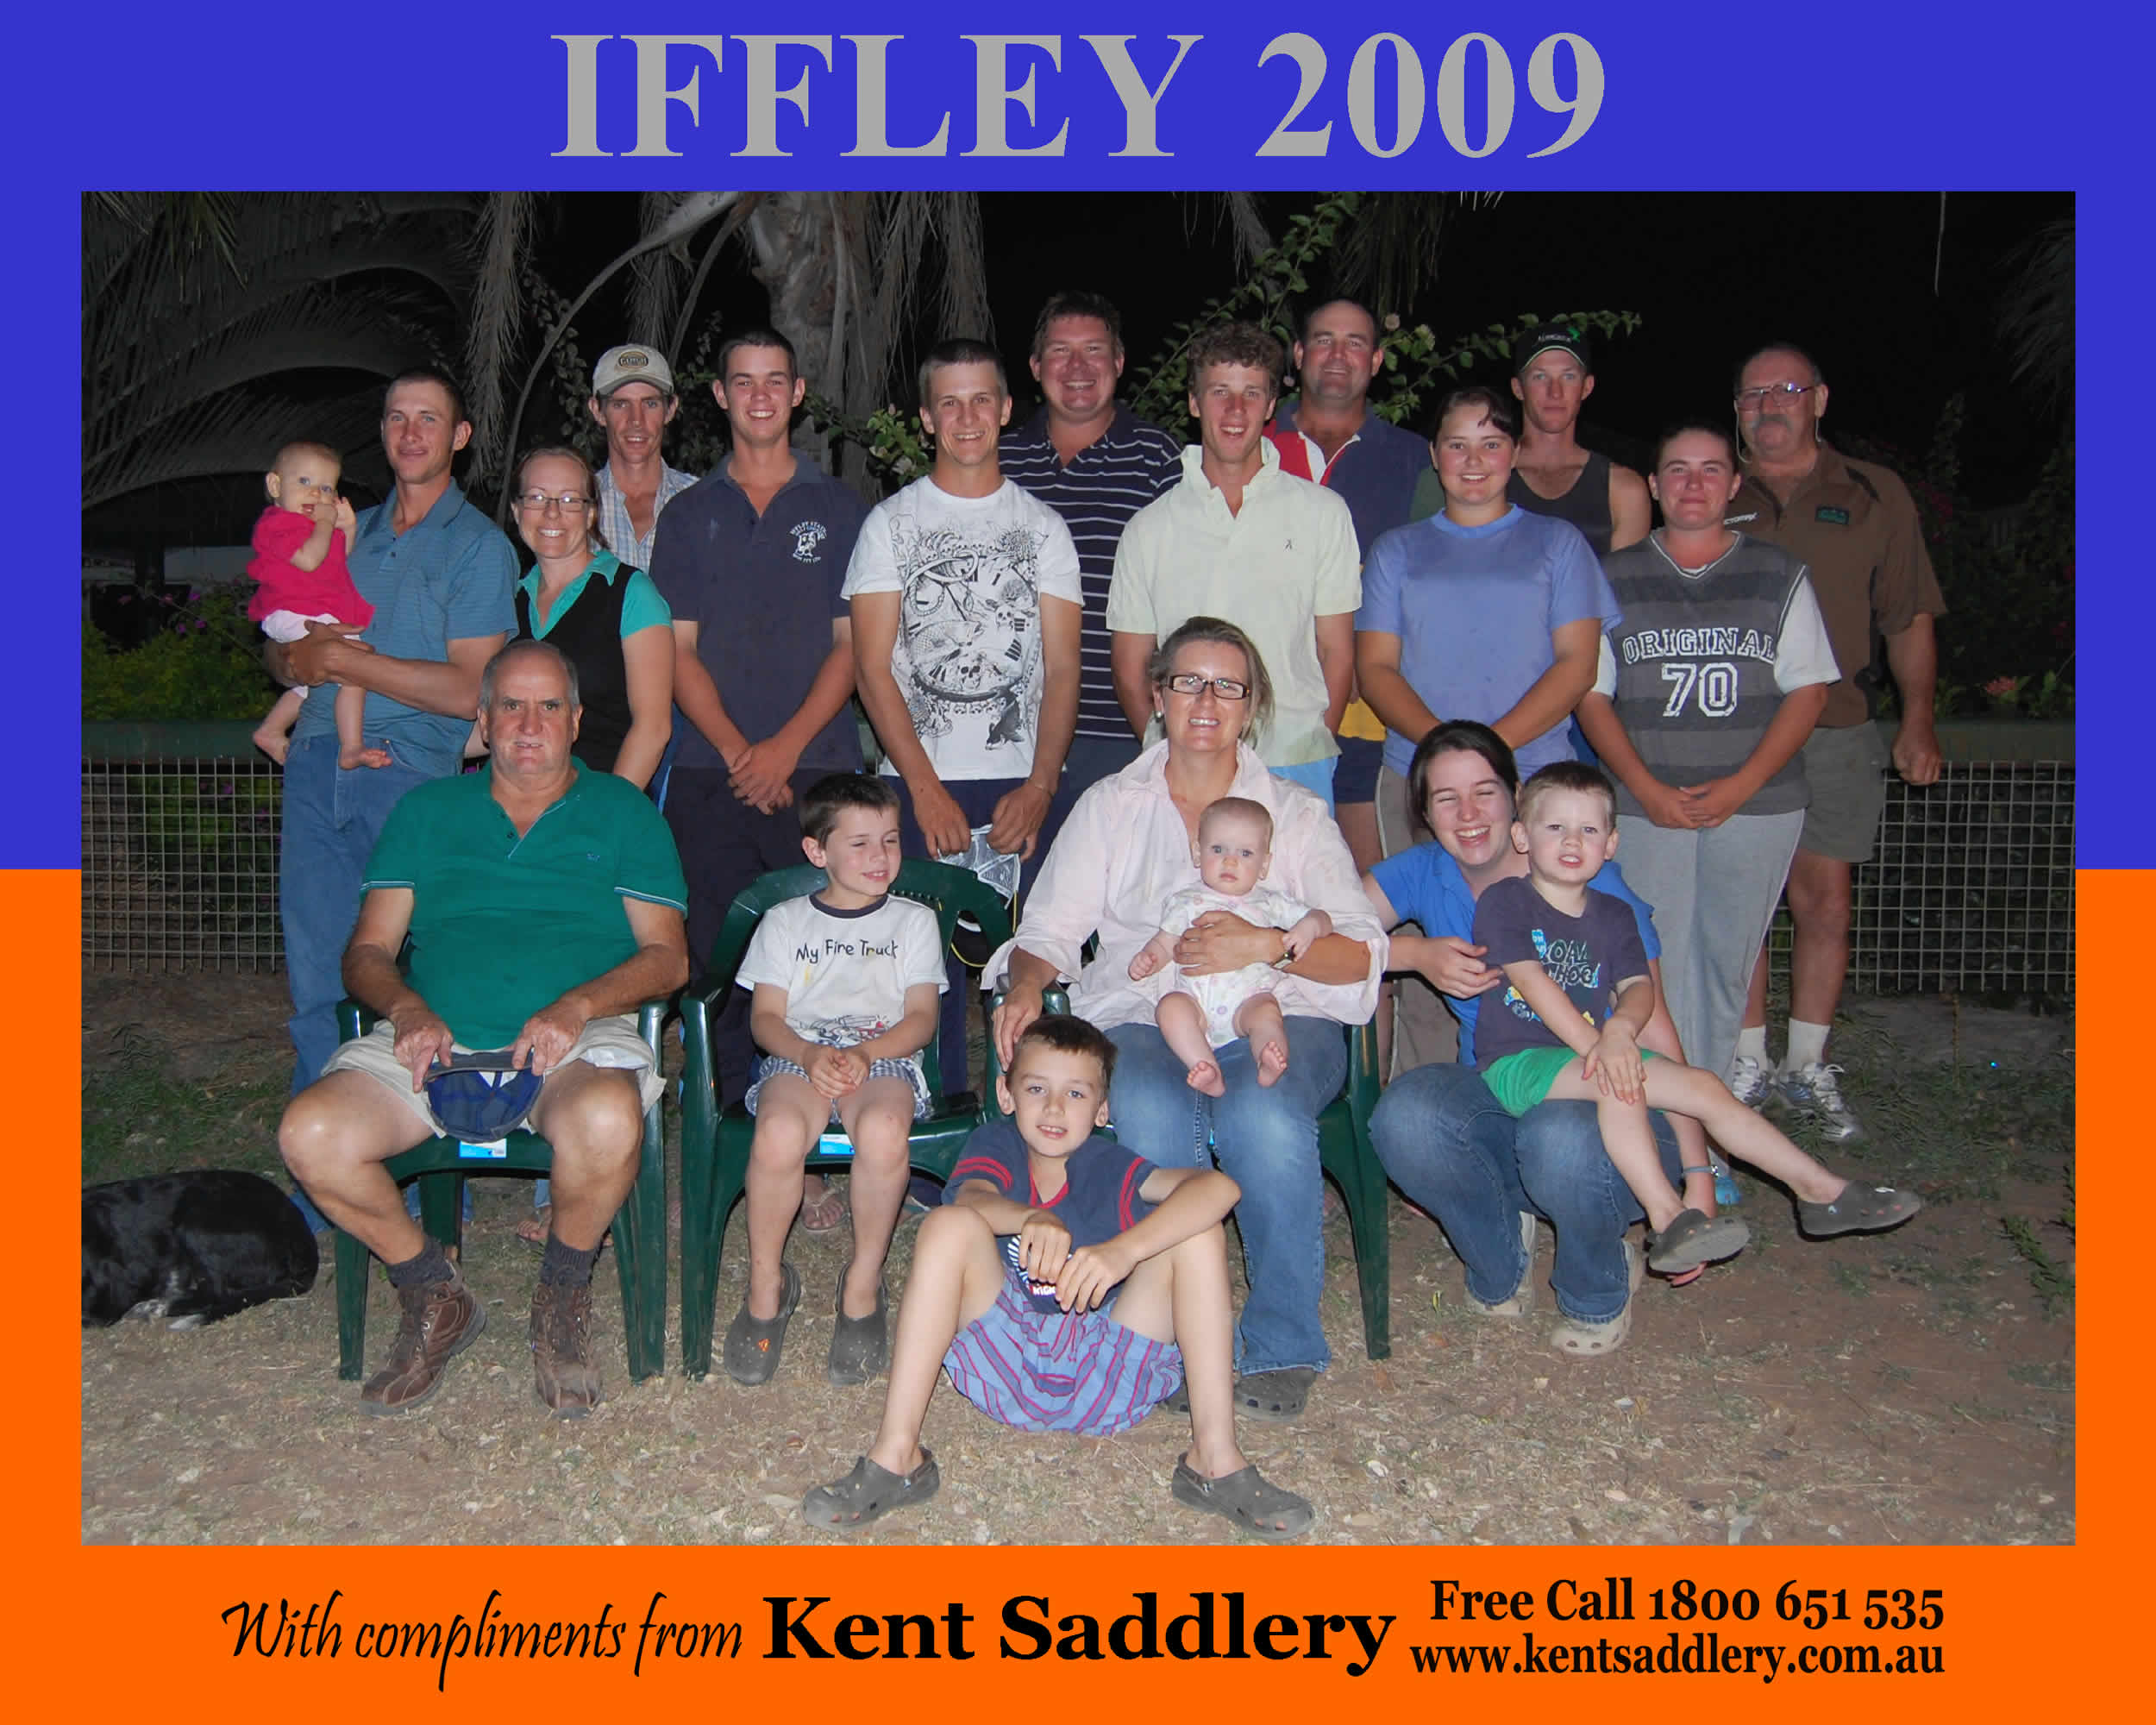 Queensland - Iffley 25